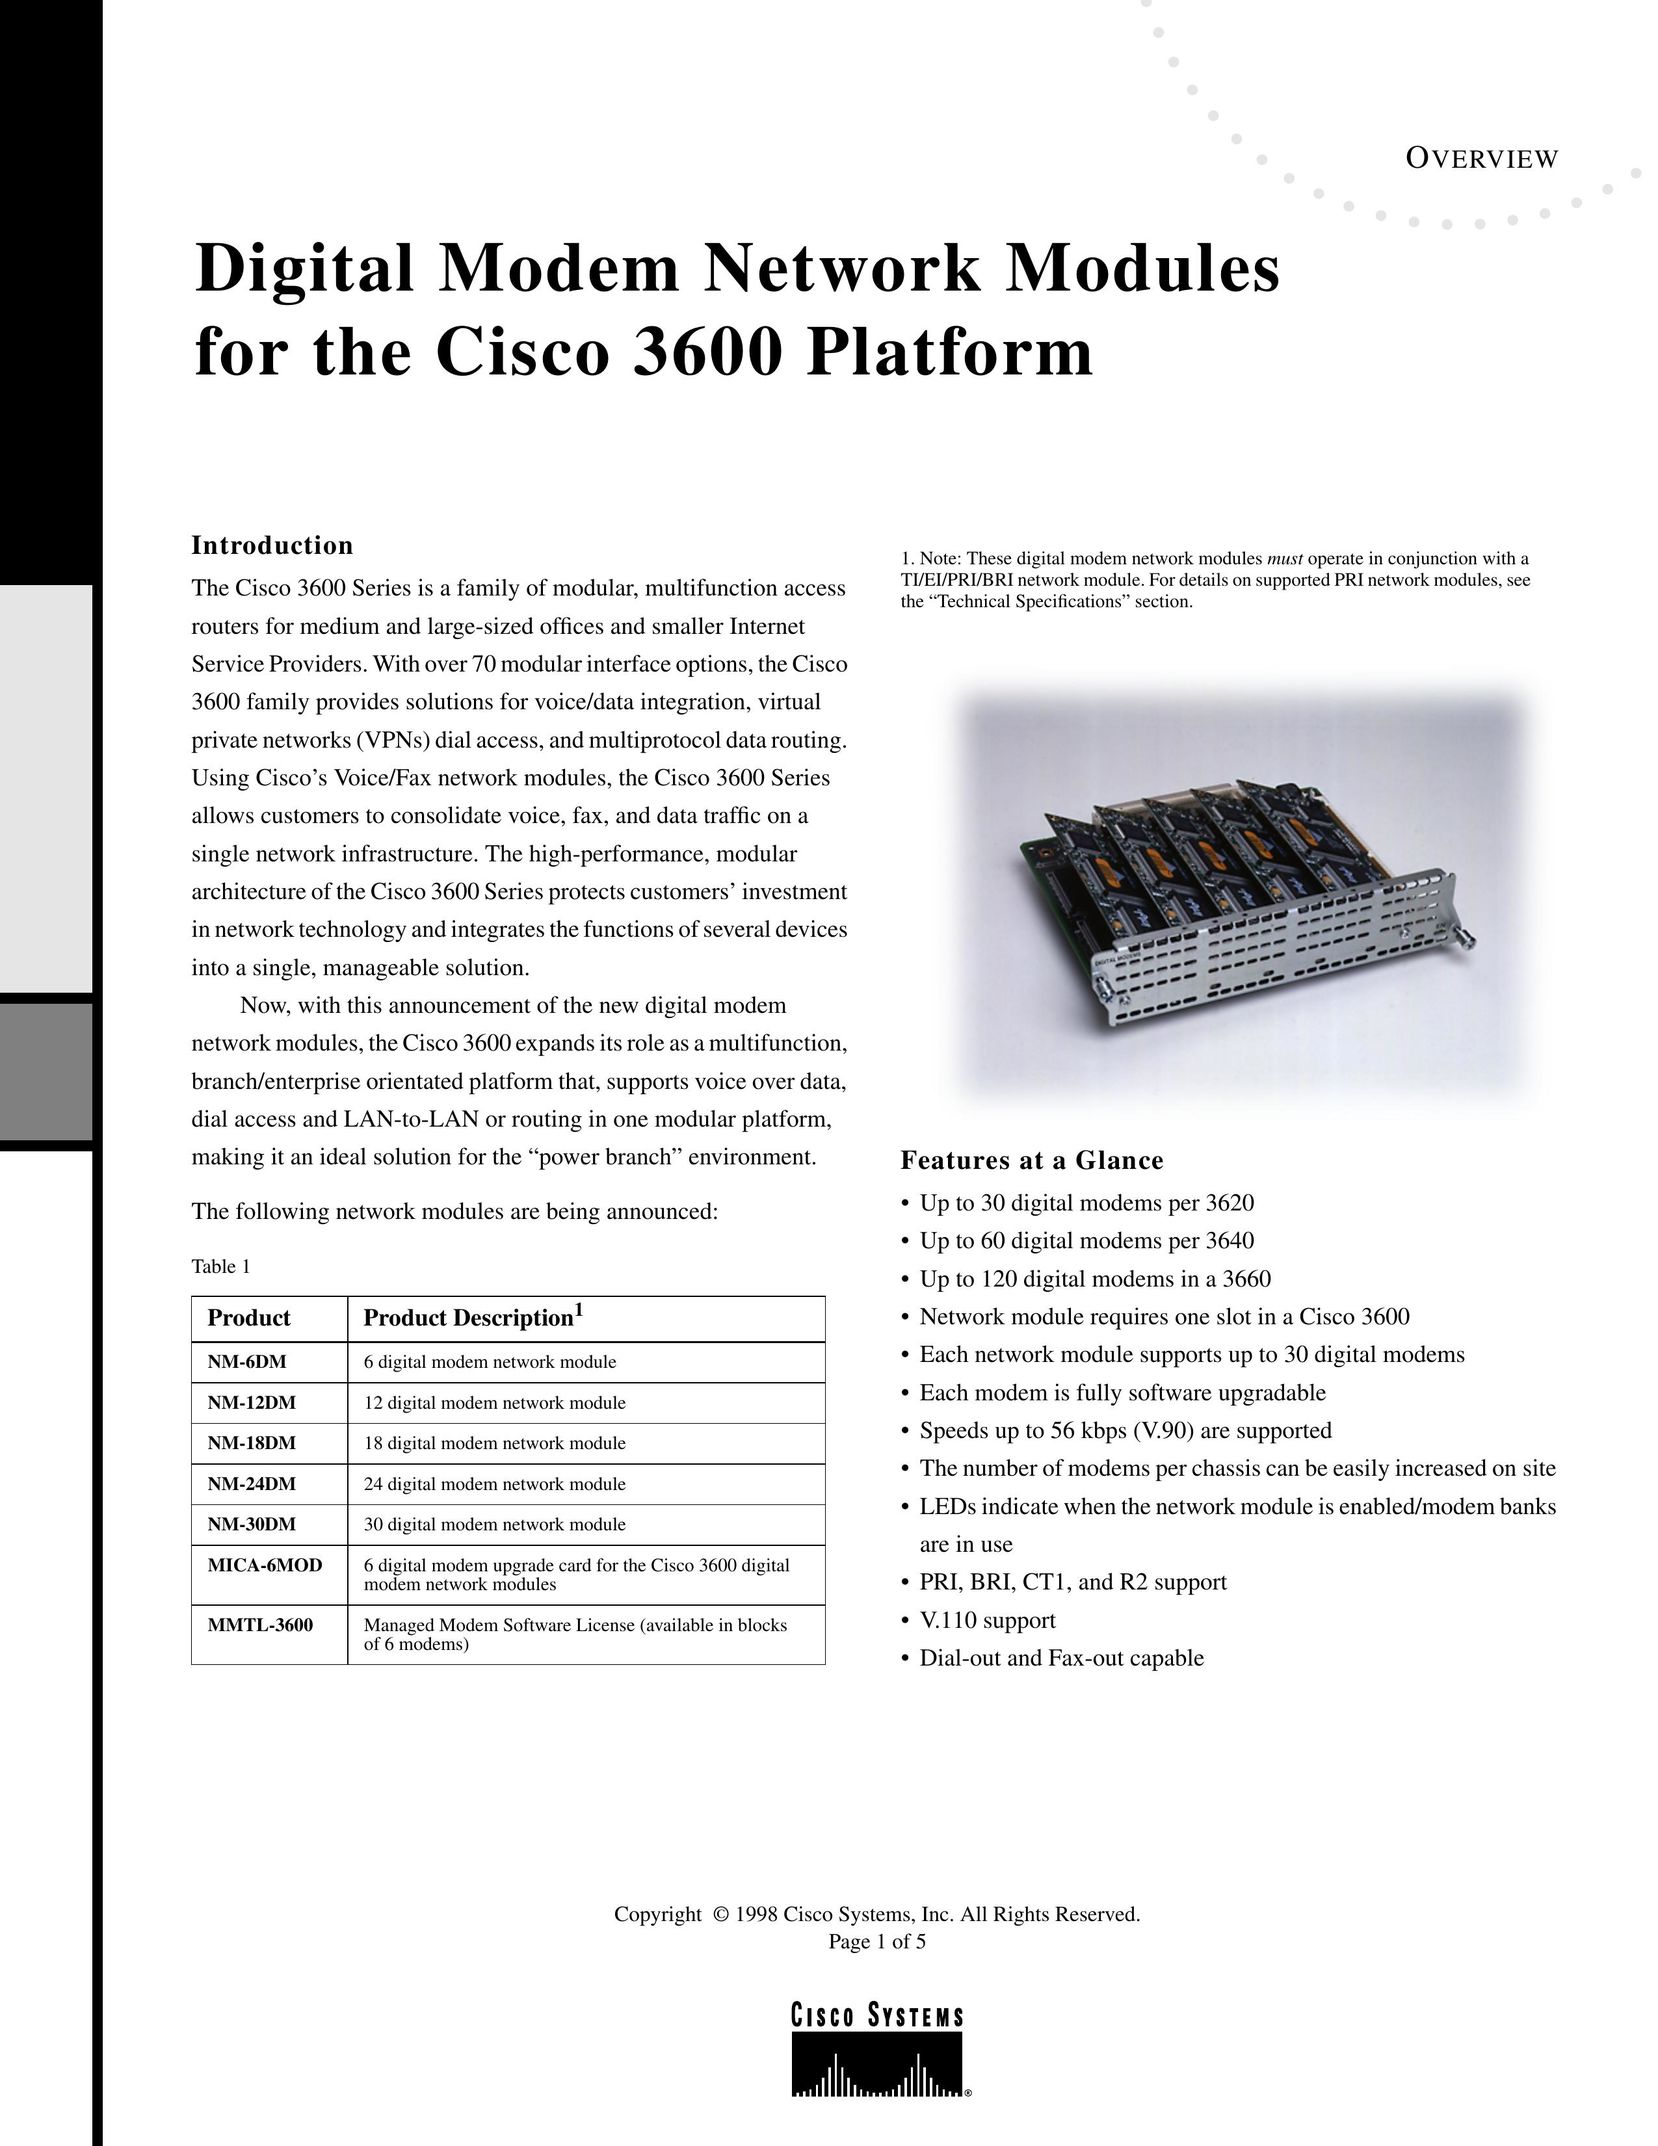 Cisco Systems NM30DM Modem User Manual